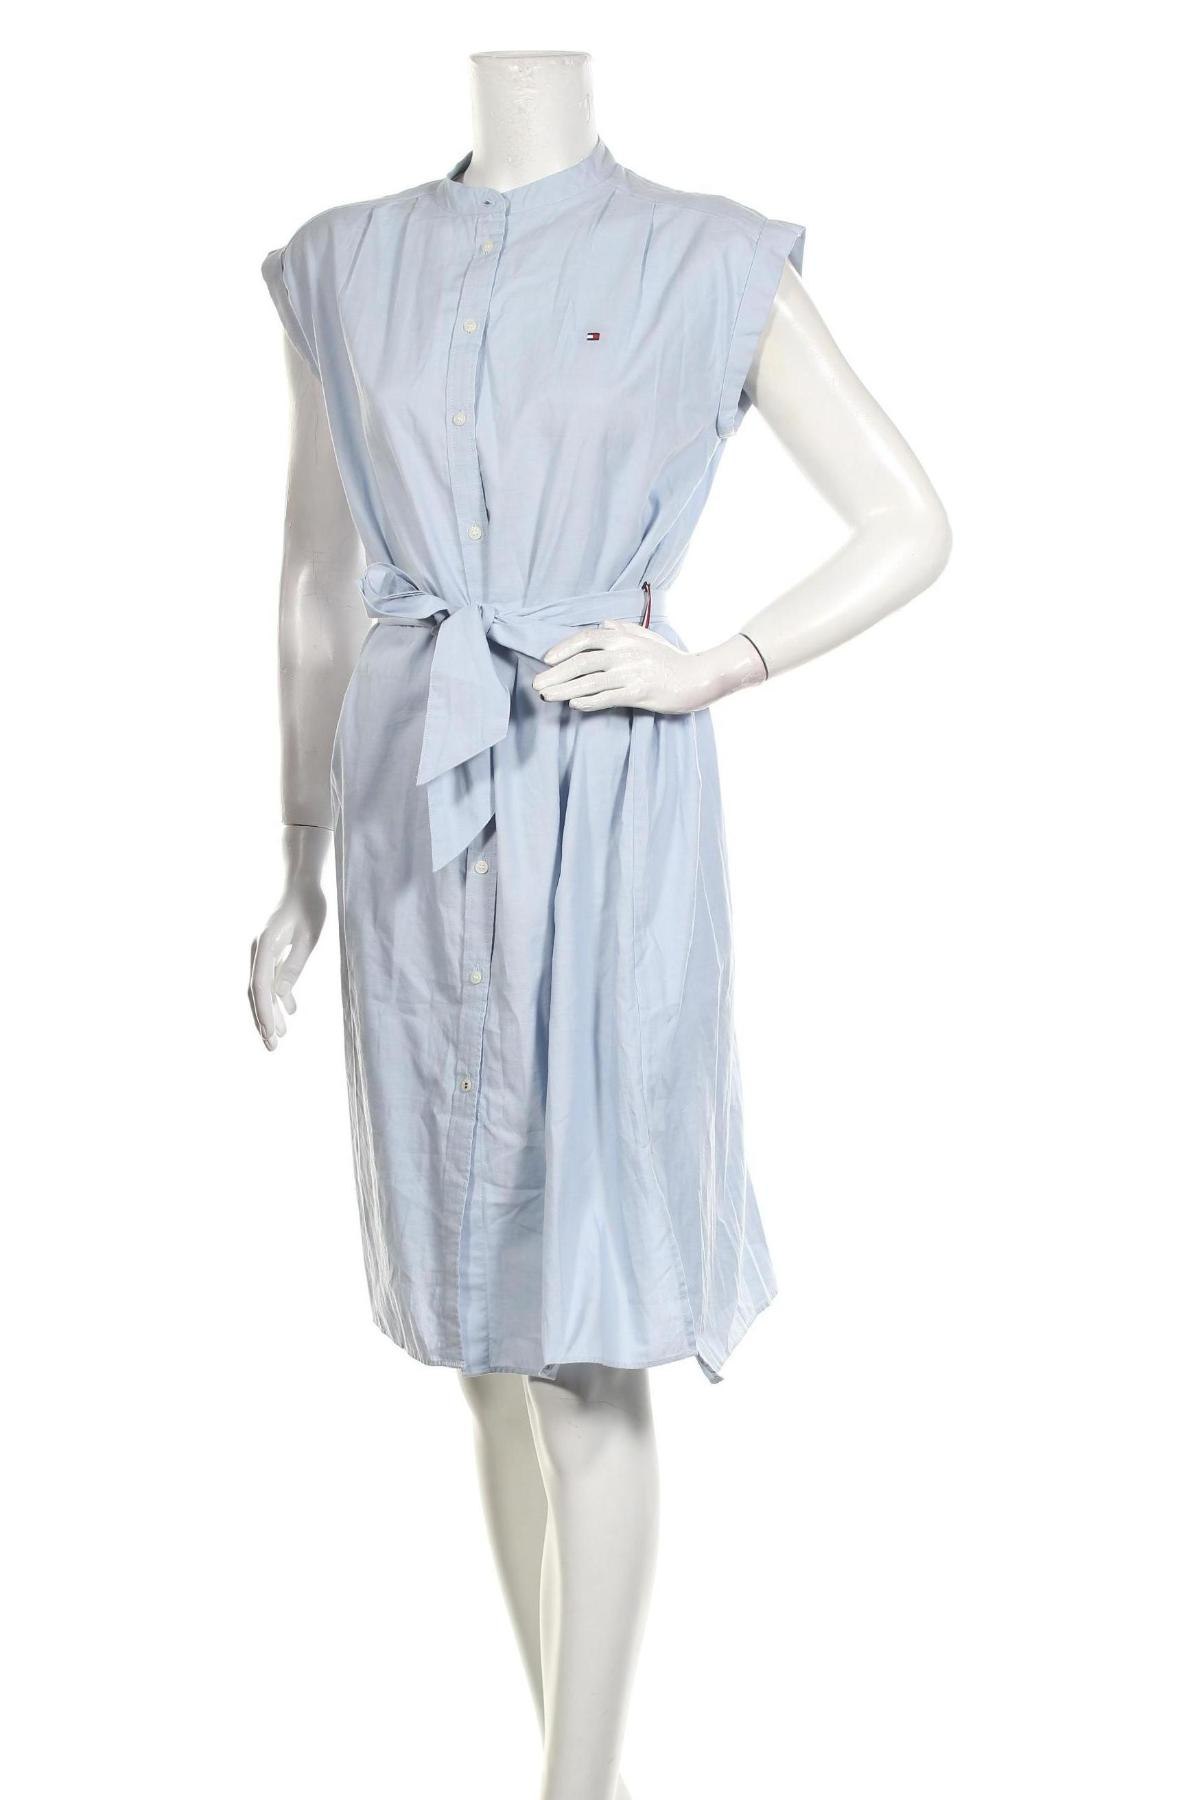 Φόρεμα Tommy Hilfiger, Μέγεθος M, Χρώμα Μπλέ, Βαμβάκι, Τιμή 100,13 €